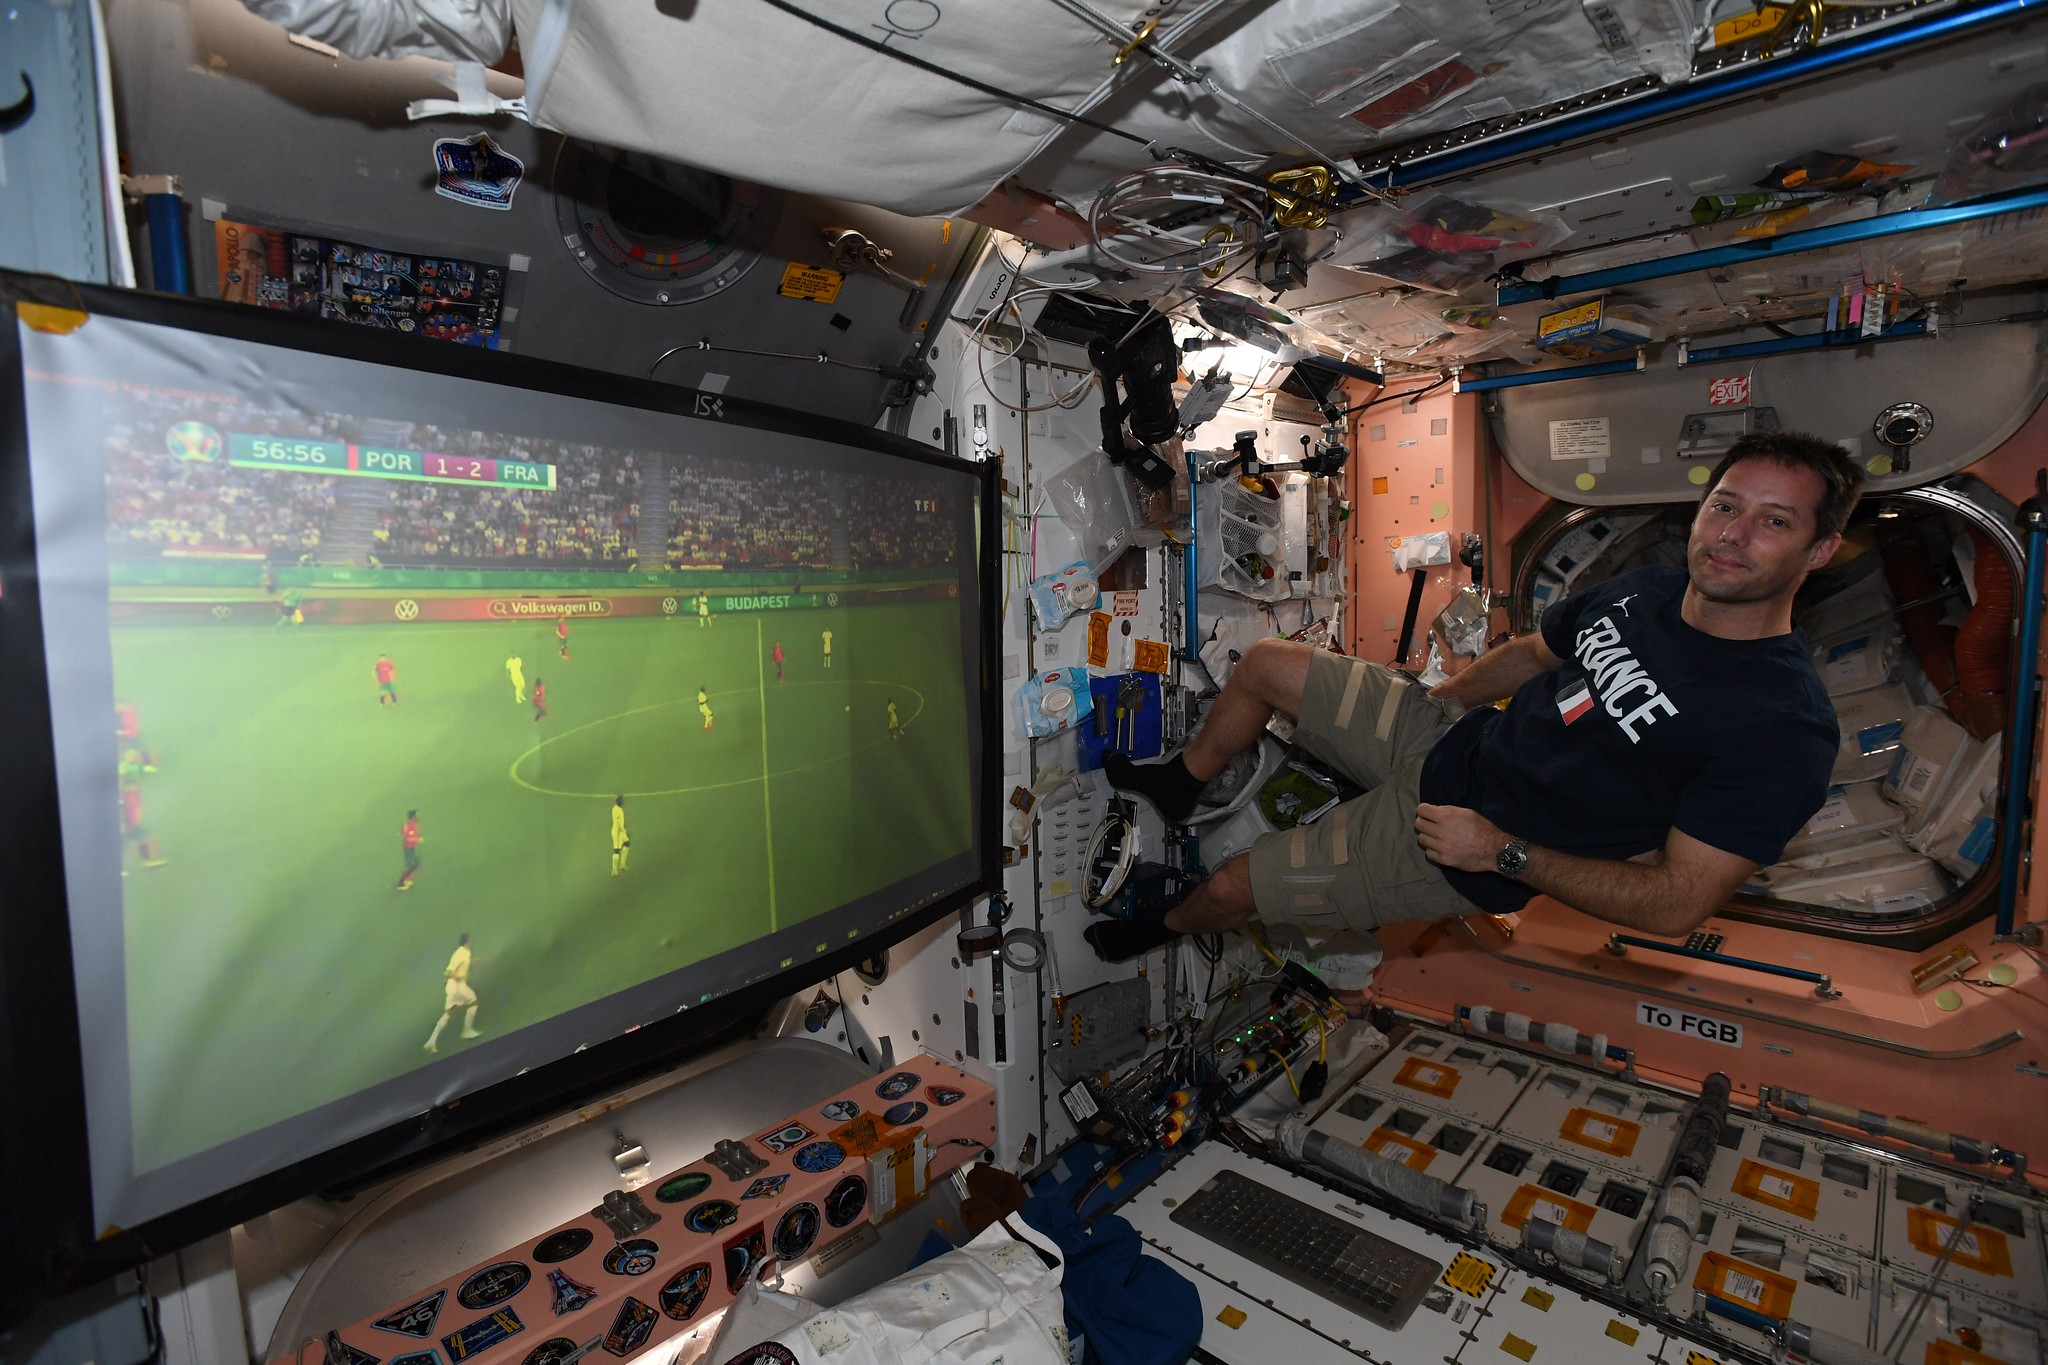 El astronauta francés, Thomas Pesquet, compartió las increíbles imágenes en sus redes sociales. Foto Prensa Libre: @Thom_astro